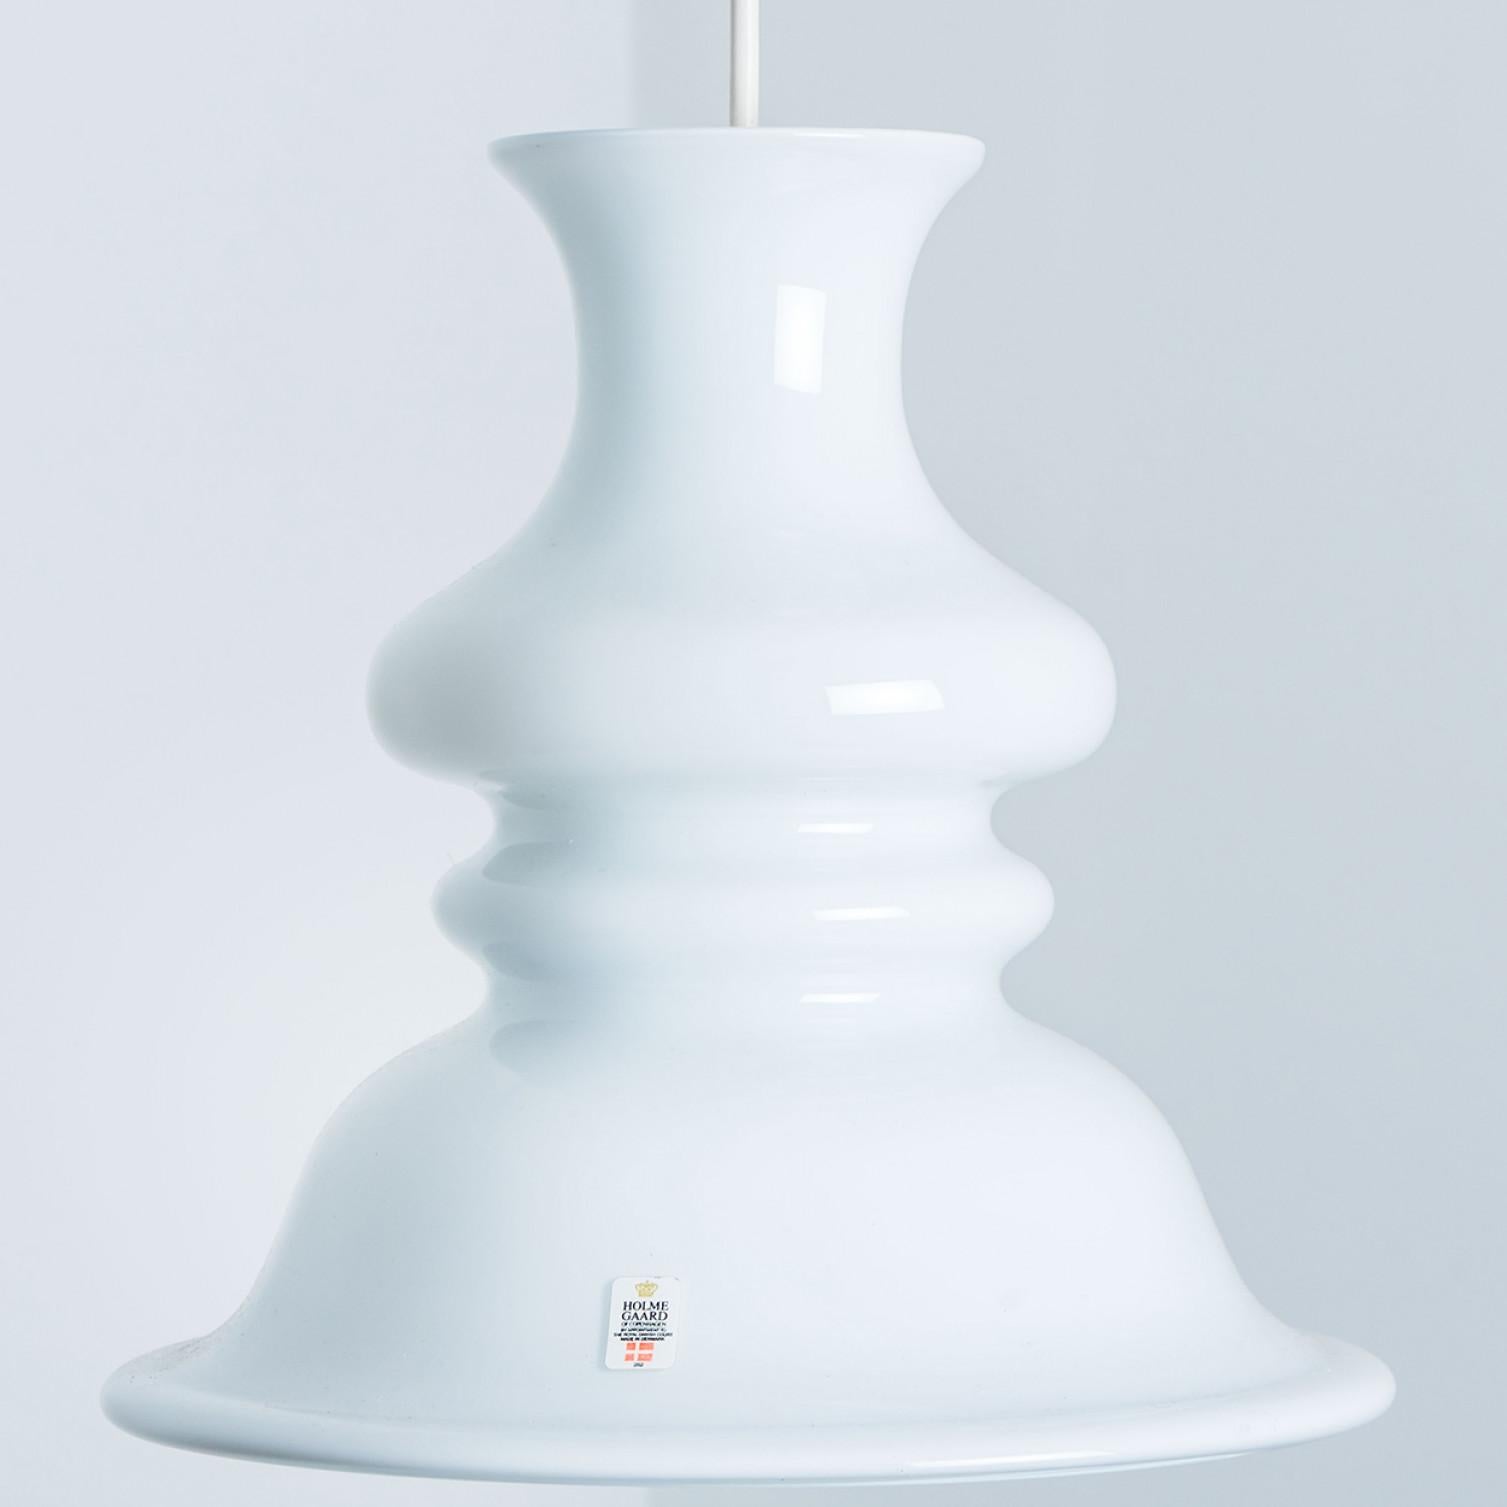 Cet ensemble de belles lampes en verre de la marque danoise Holmegaard présente une belle couleur blanche. Le design est signé Michael Bang, un designer dont les œuvres sont aujourd'hui très recherchées par les collectionneurs de la marque. Un beau